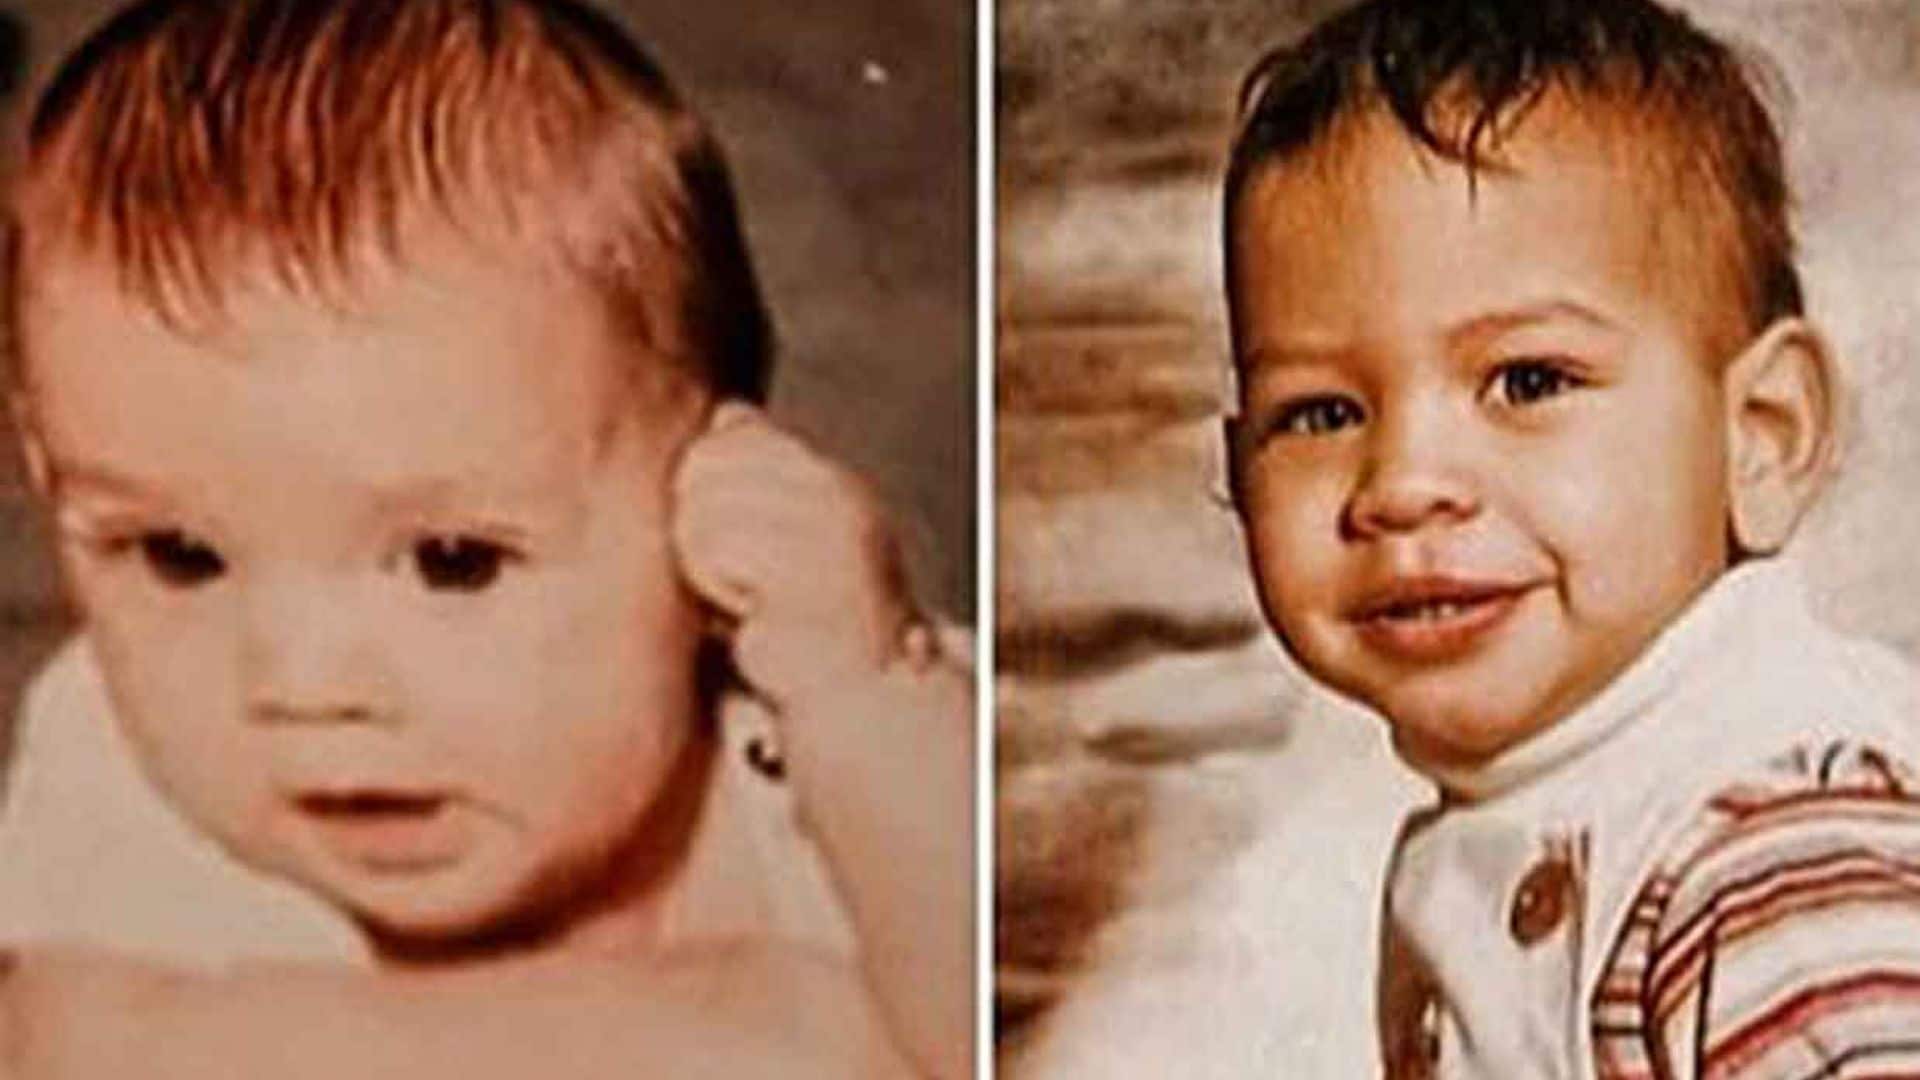 ¿Reconoces a estos dos niños? Son una de las parejas de 'celebrities' más conocidas